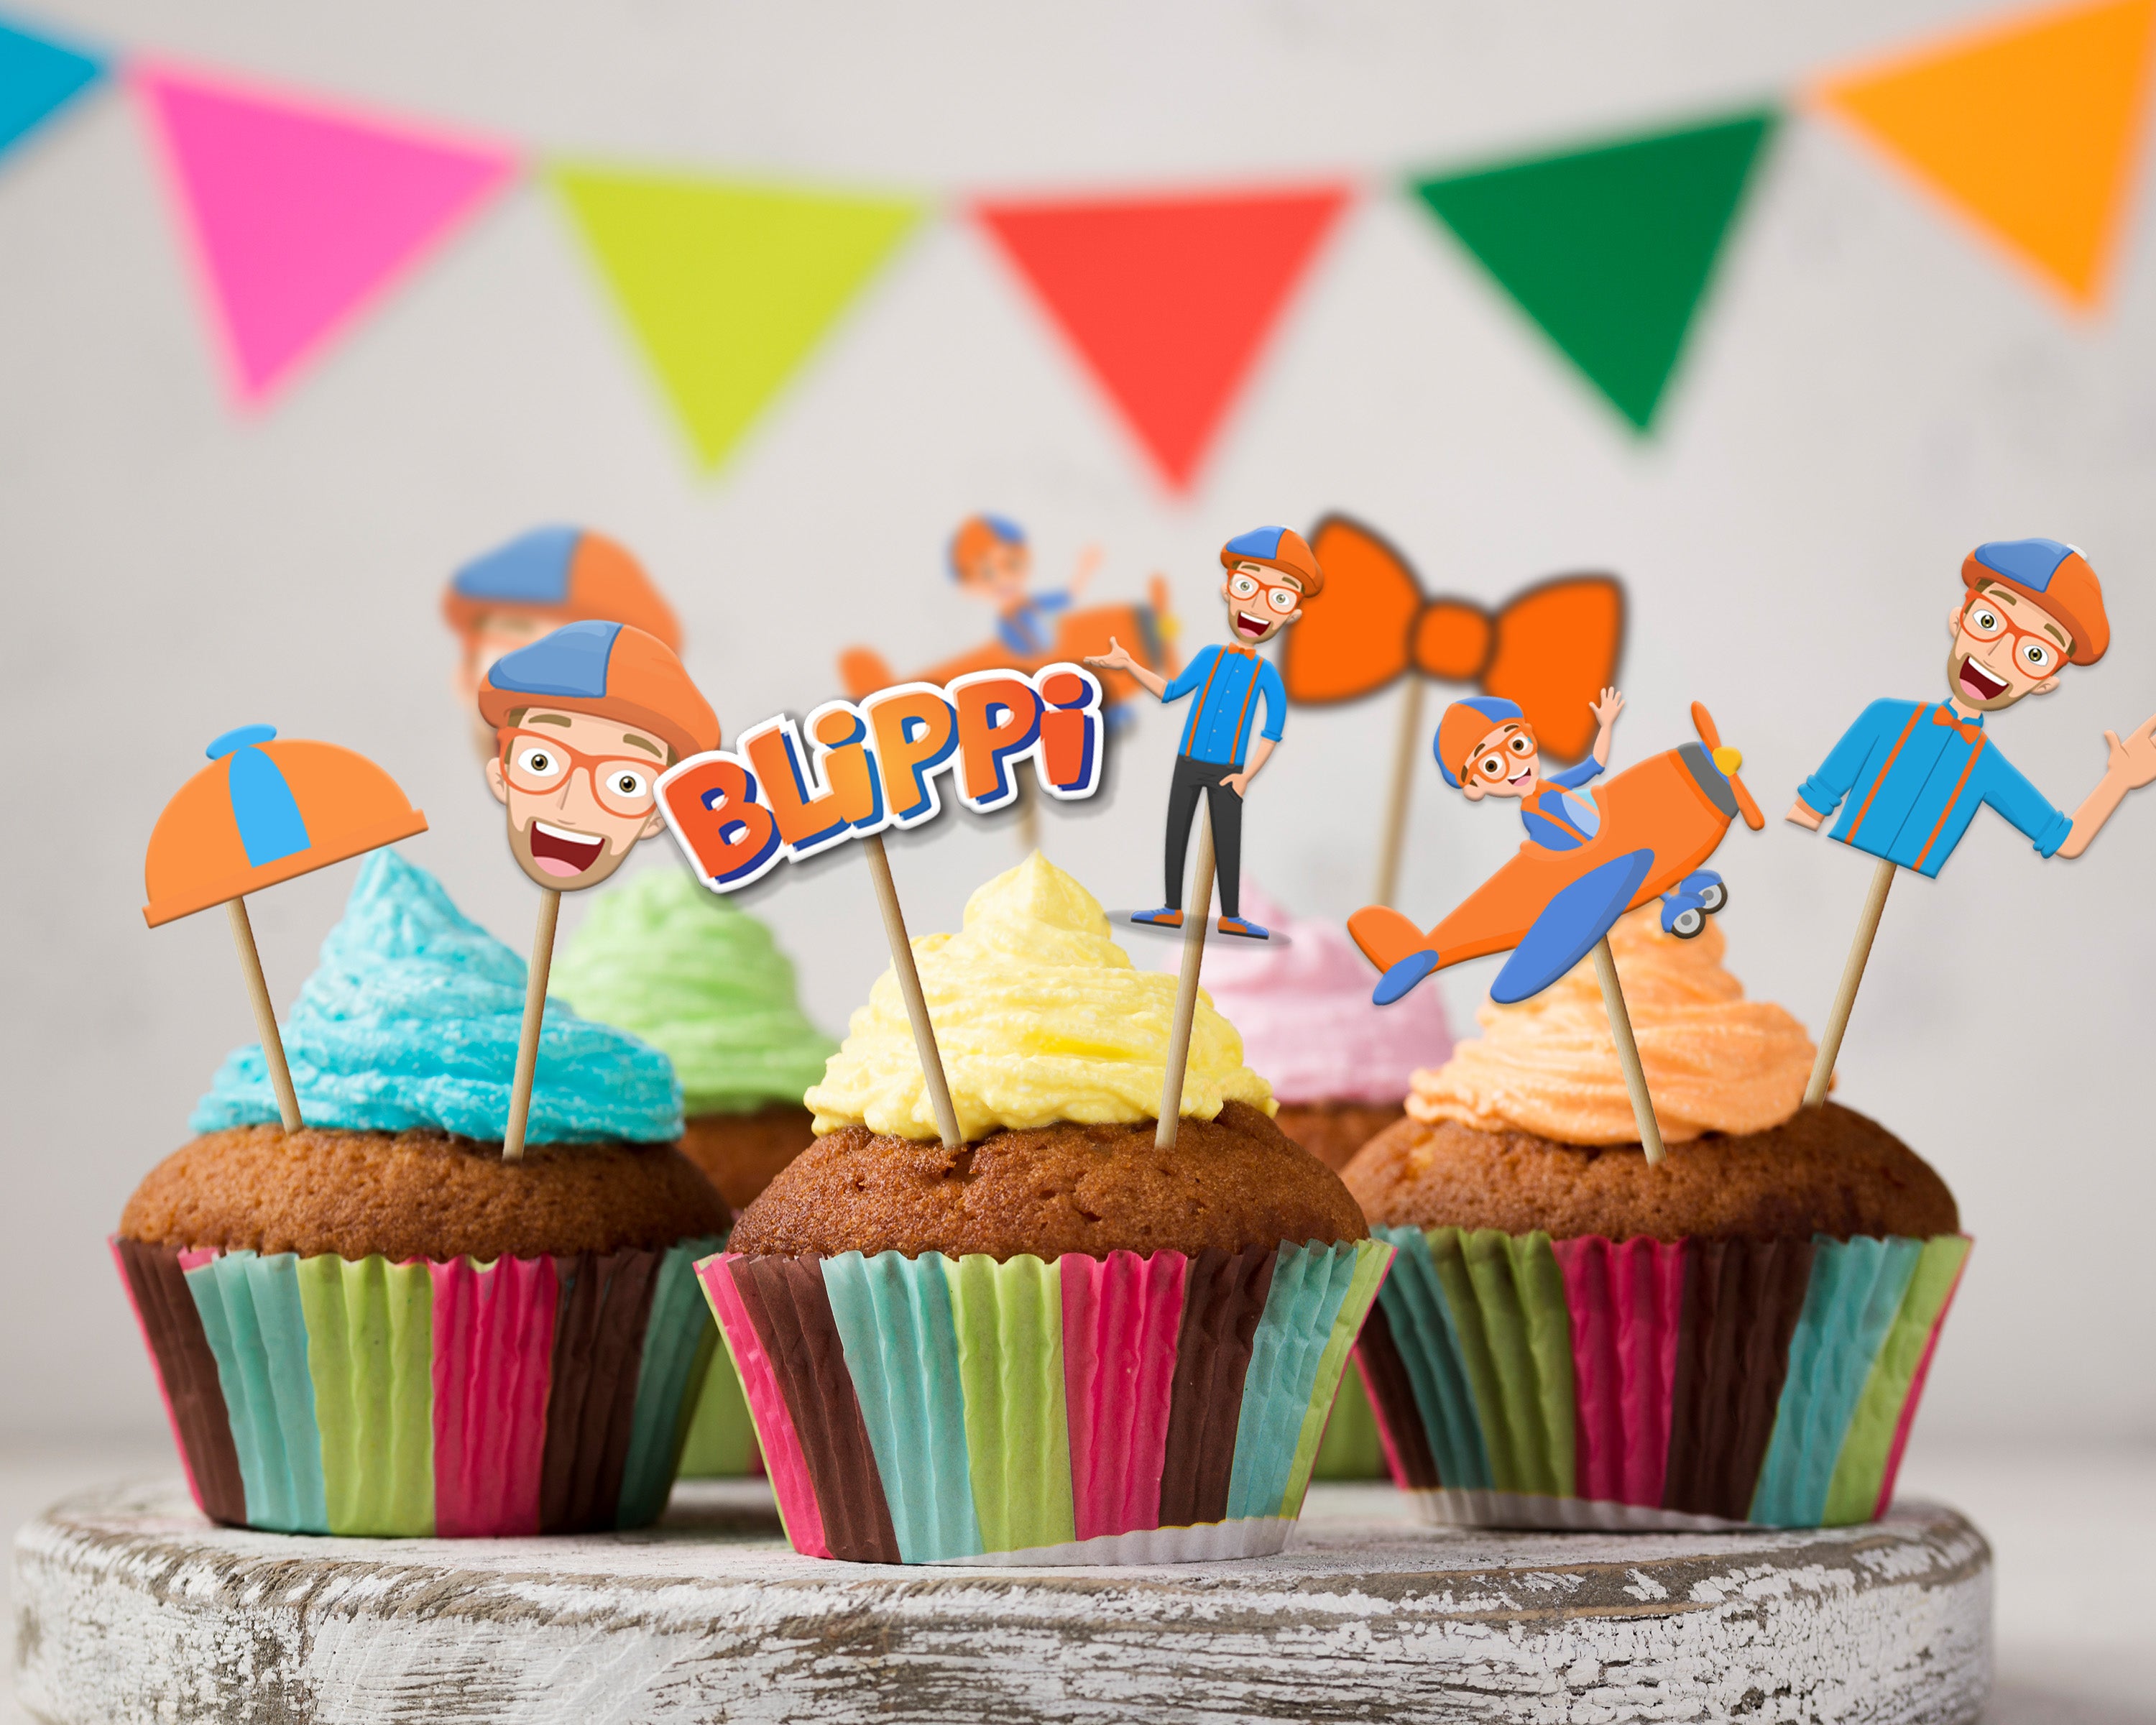 Blippi Birthday Cake | Second birthday cakes, 3rd birthday cakes, Birthday  party cake